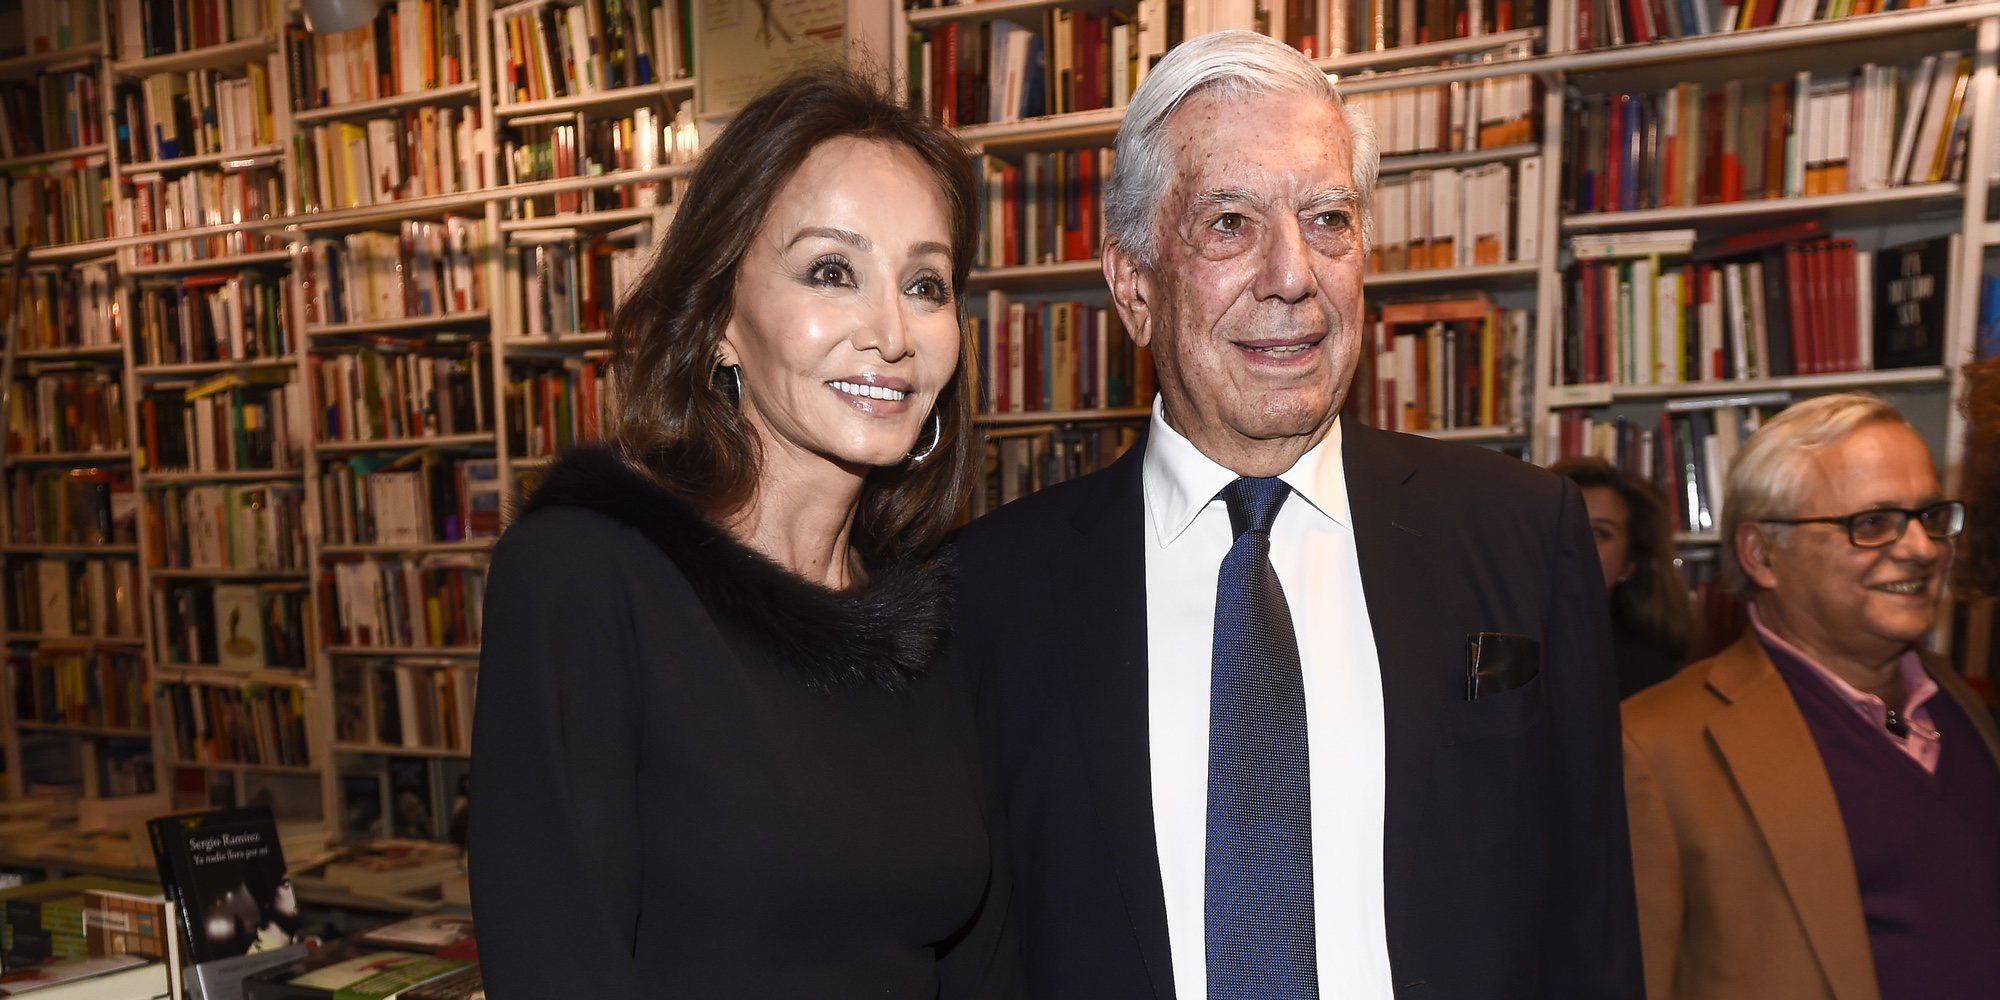 Una entrevista a Vargas Llosa en el New York Times retrata a Isabel Preysler como una 'proto-Kardashian'